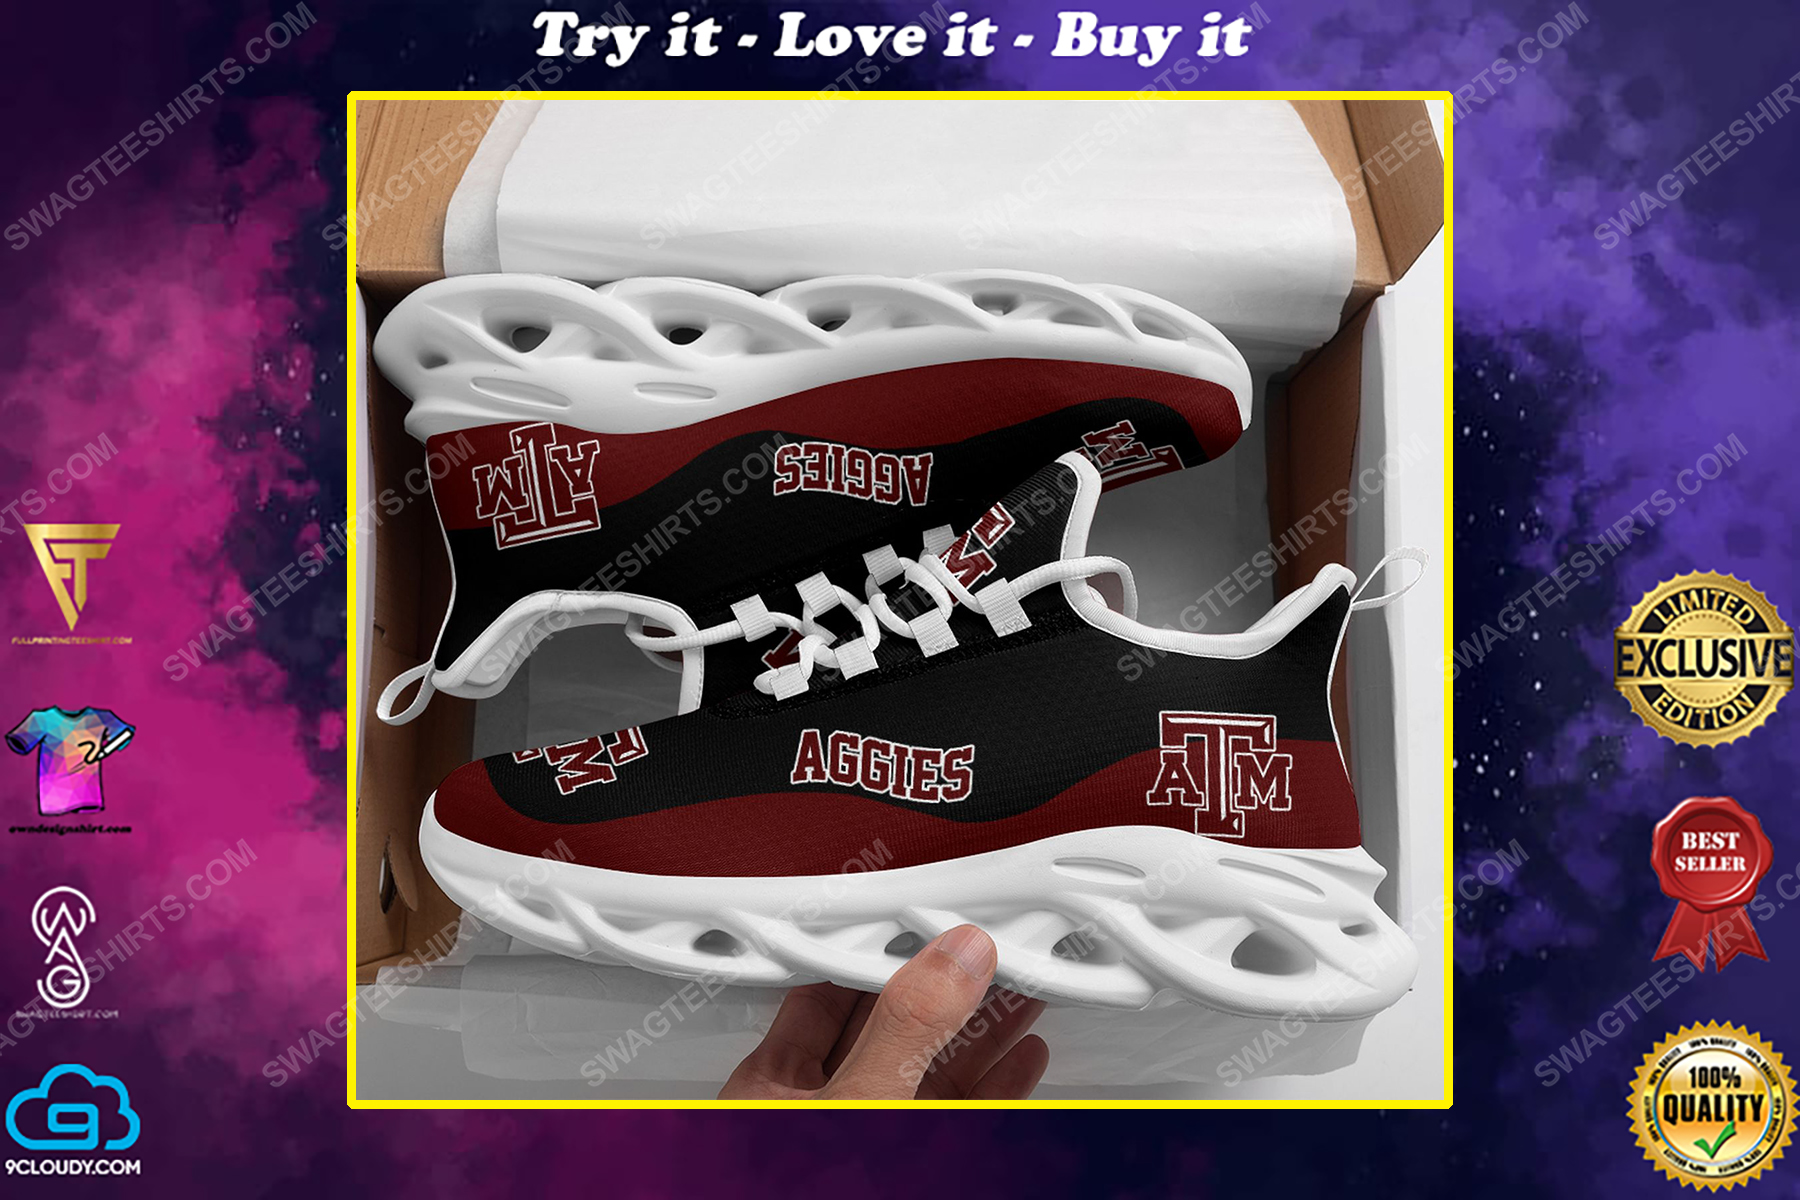 The texas a&m aggies football team max soul shoes